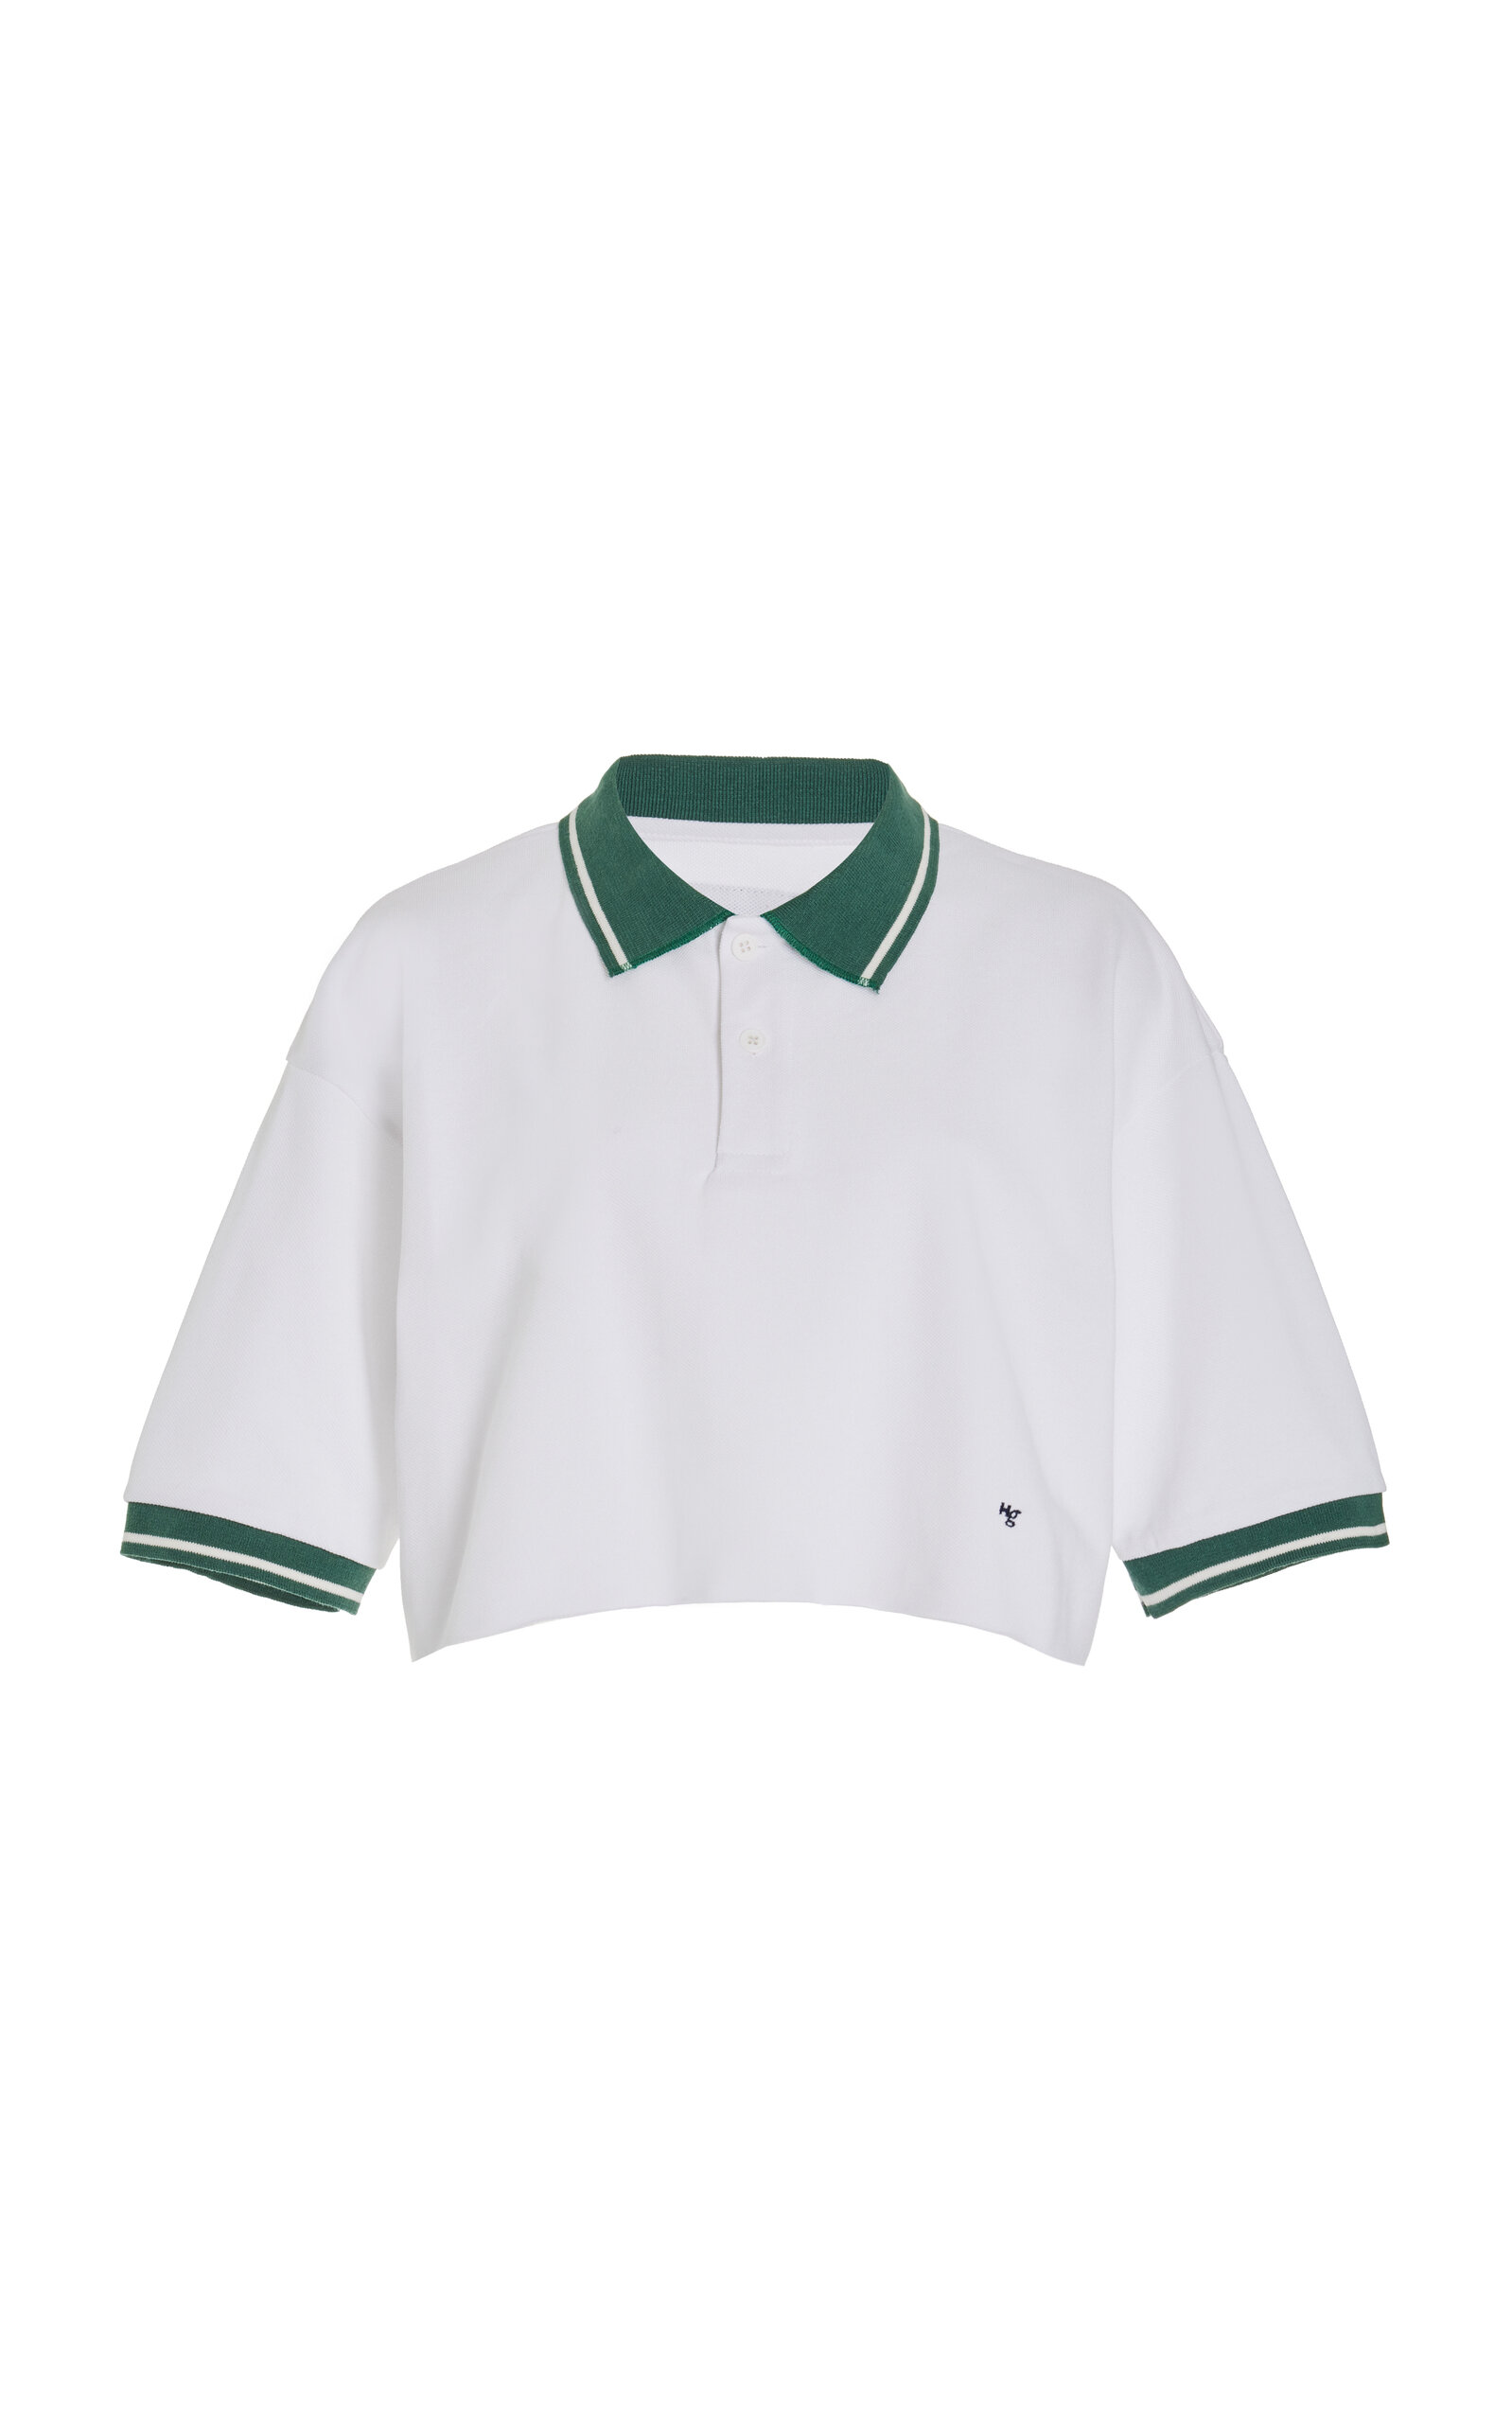 HOMMEGIRLS Women's Exclusive Cropped Cotton Polo Shirt